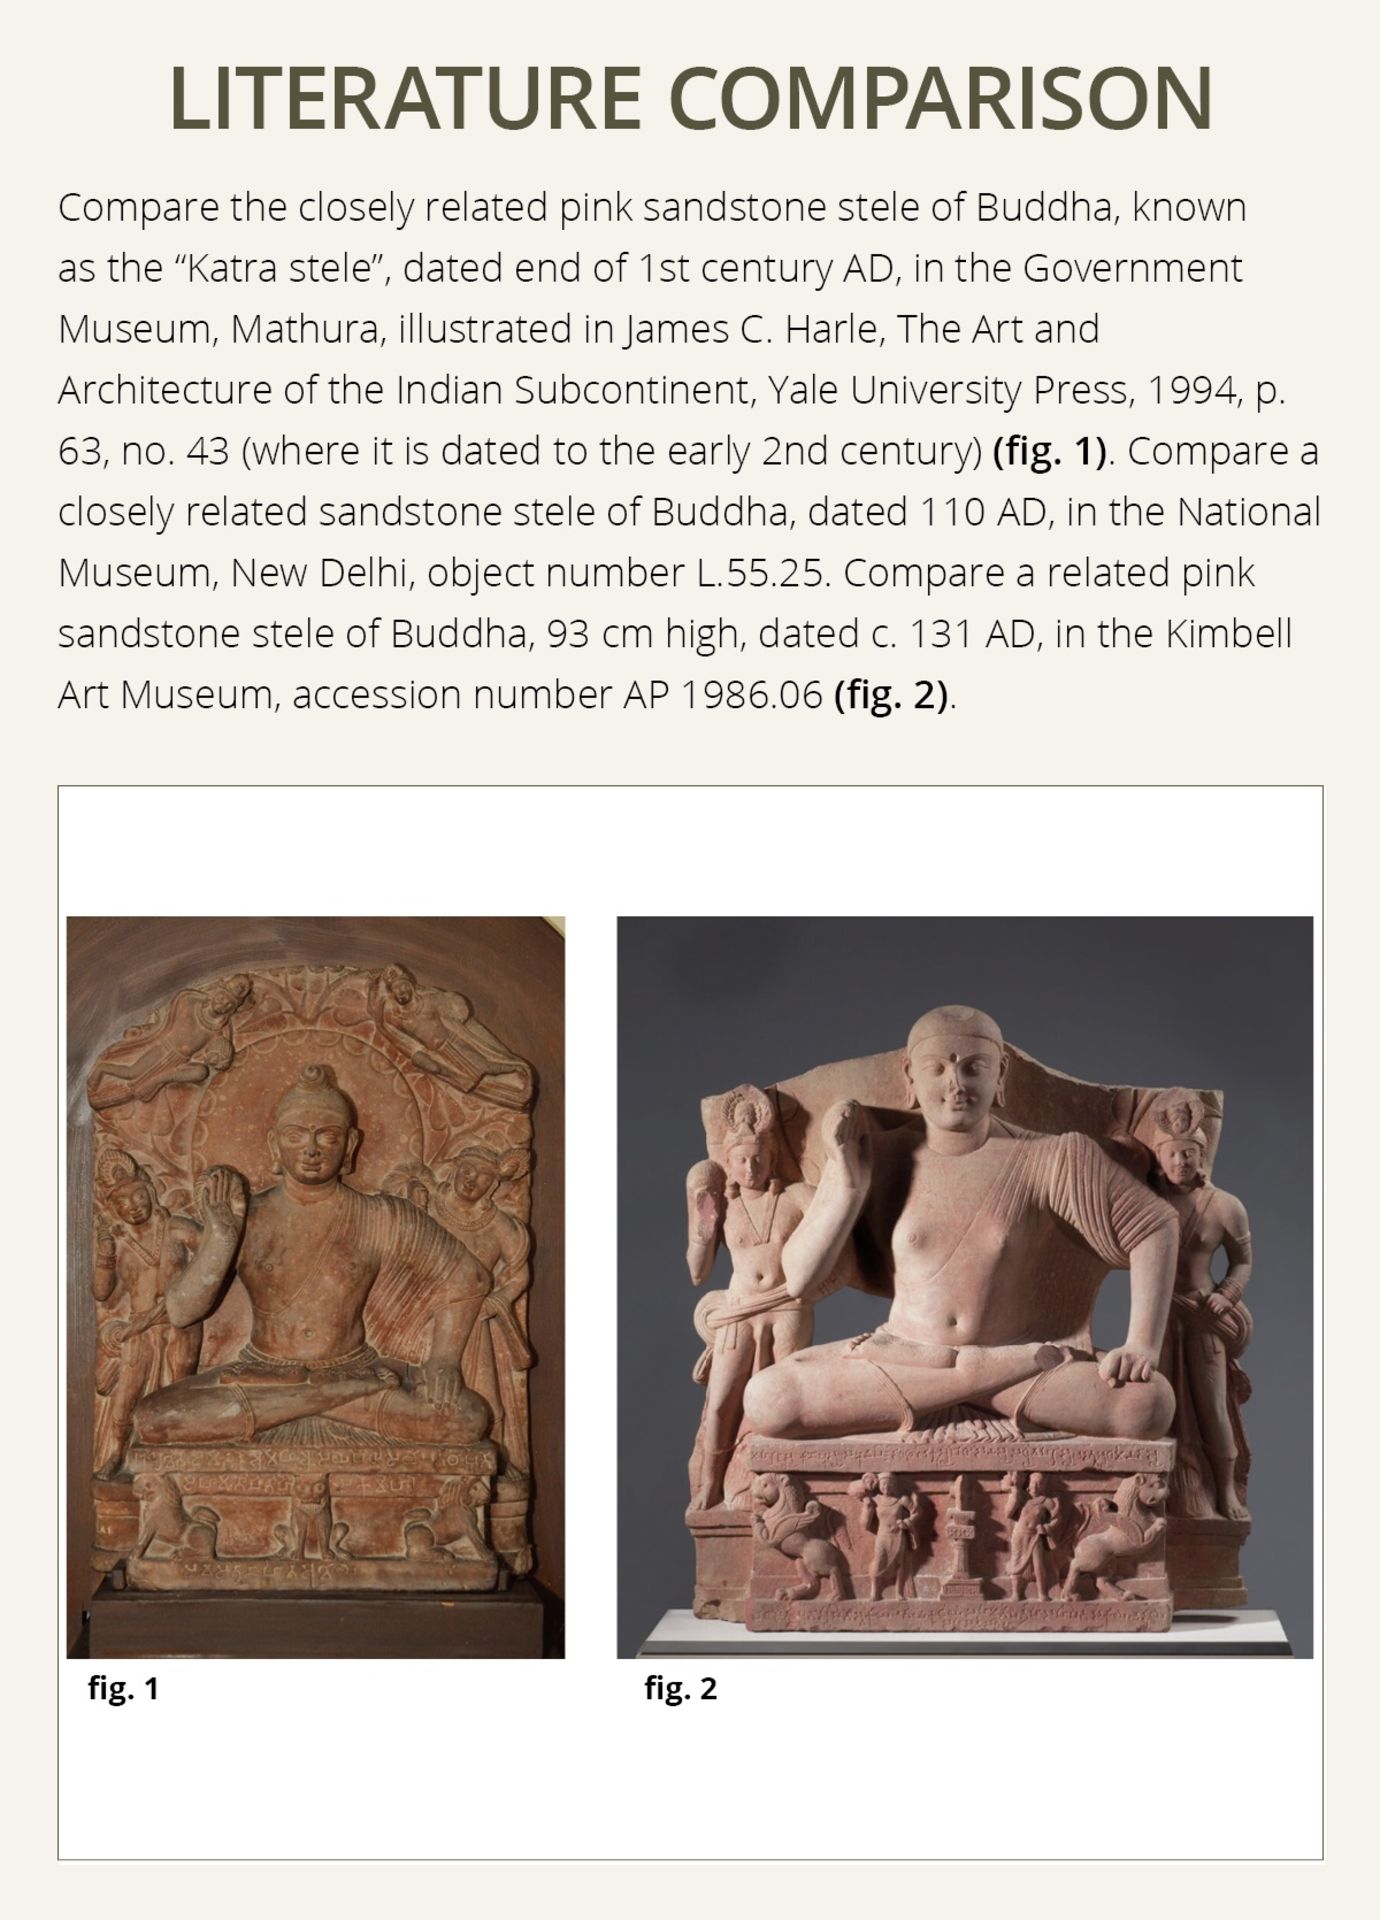 A PINK SANDSTONE STELE OF BUDDHA SHAKYAMUNI, KUSHAN PERIOD, MATHURA, LATE 1ST TO EARLY 2ND CENTURY - Image 5 of 14